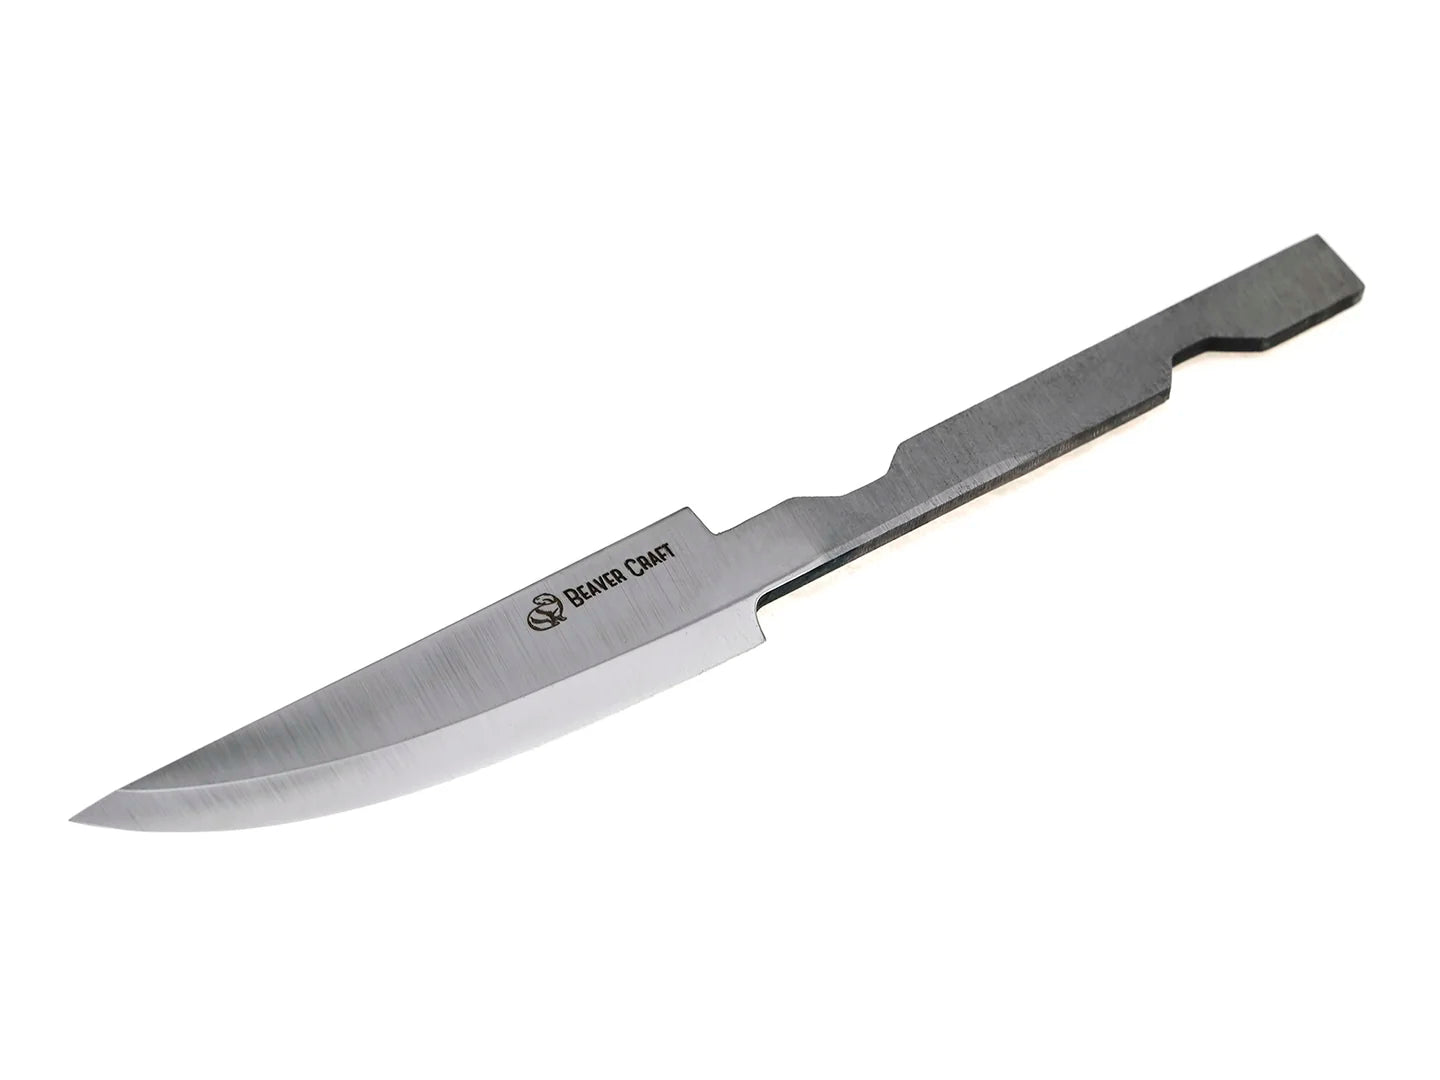 Buy BC1 - Blade for Whittling Knife C1 online - BeaverCraft